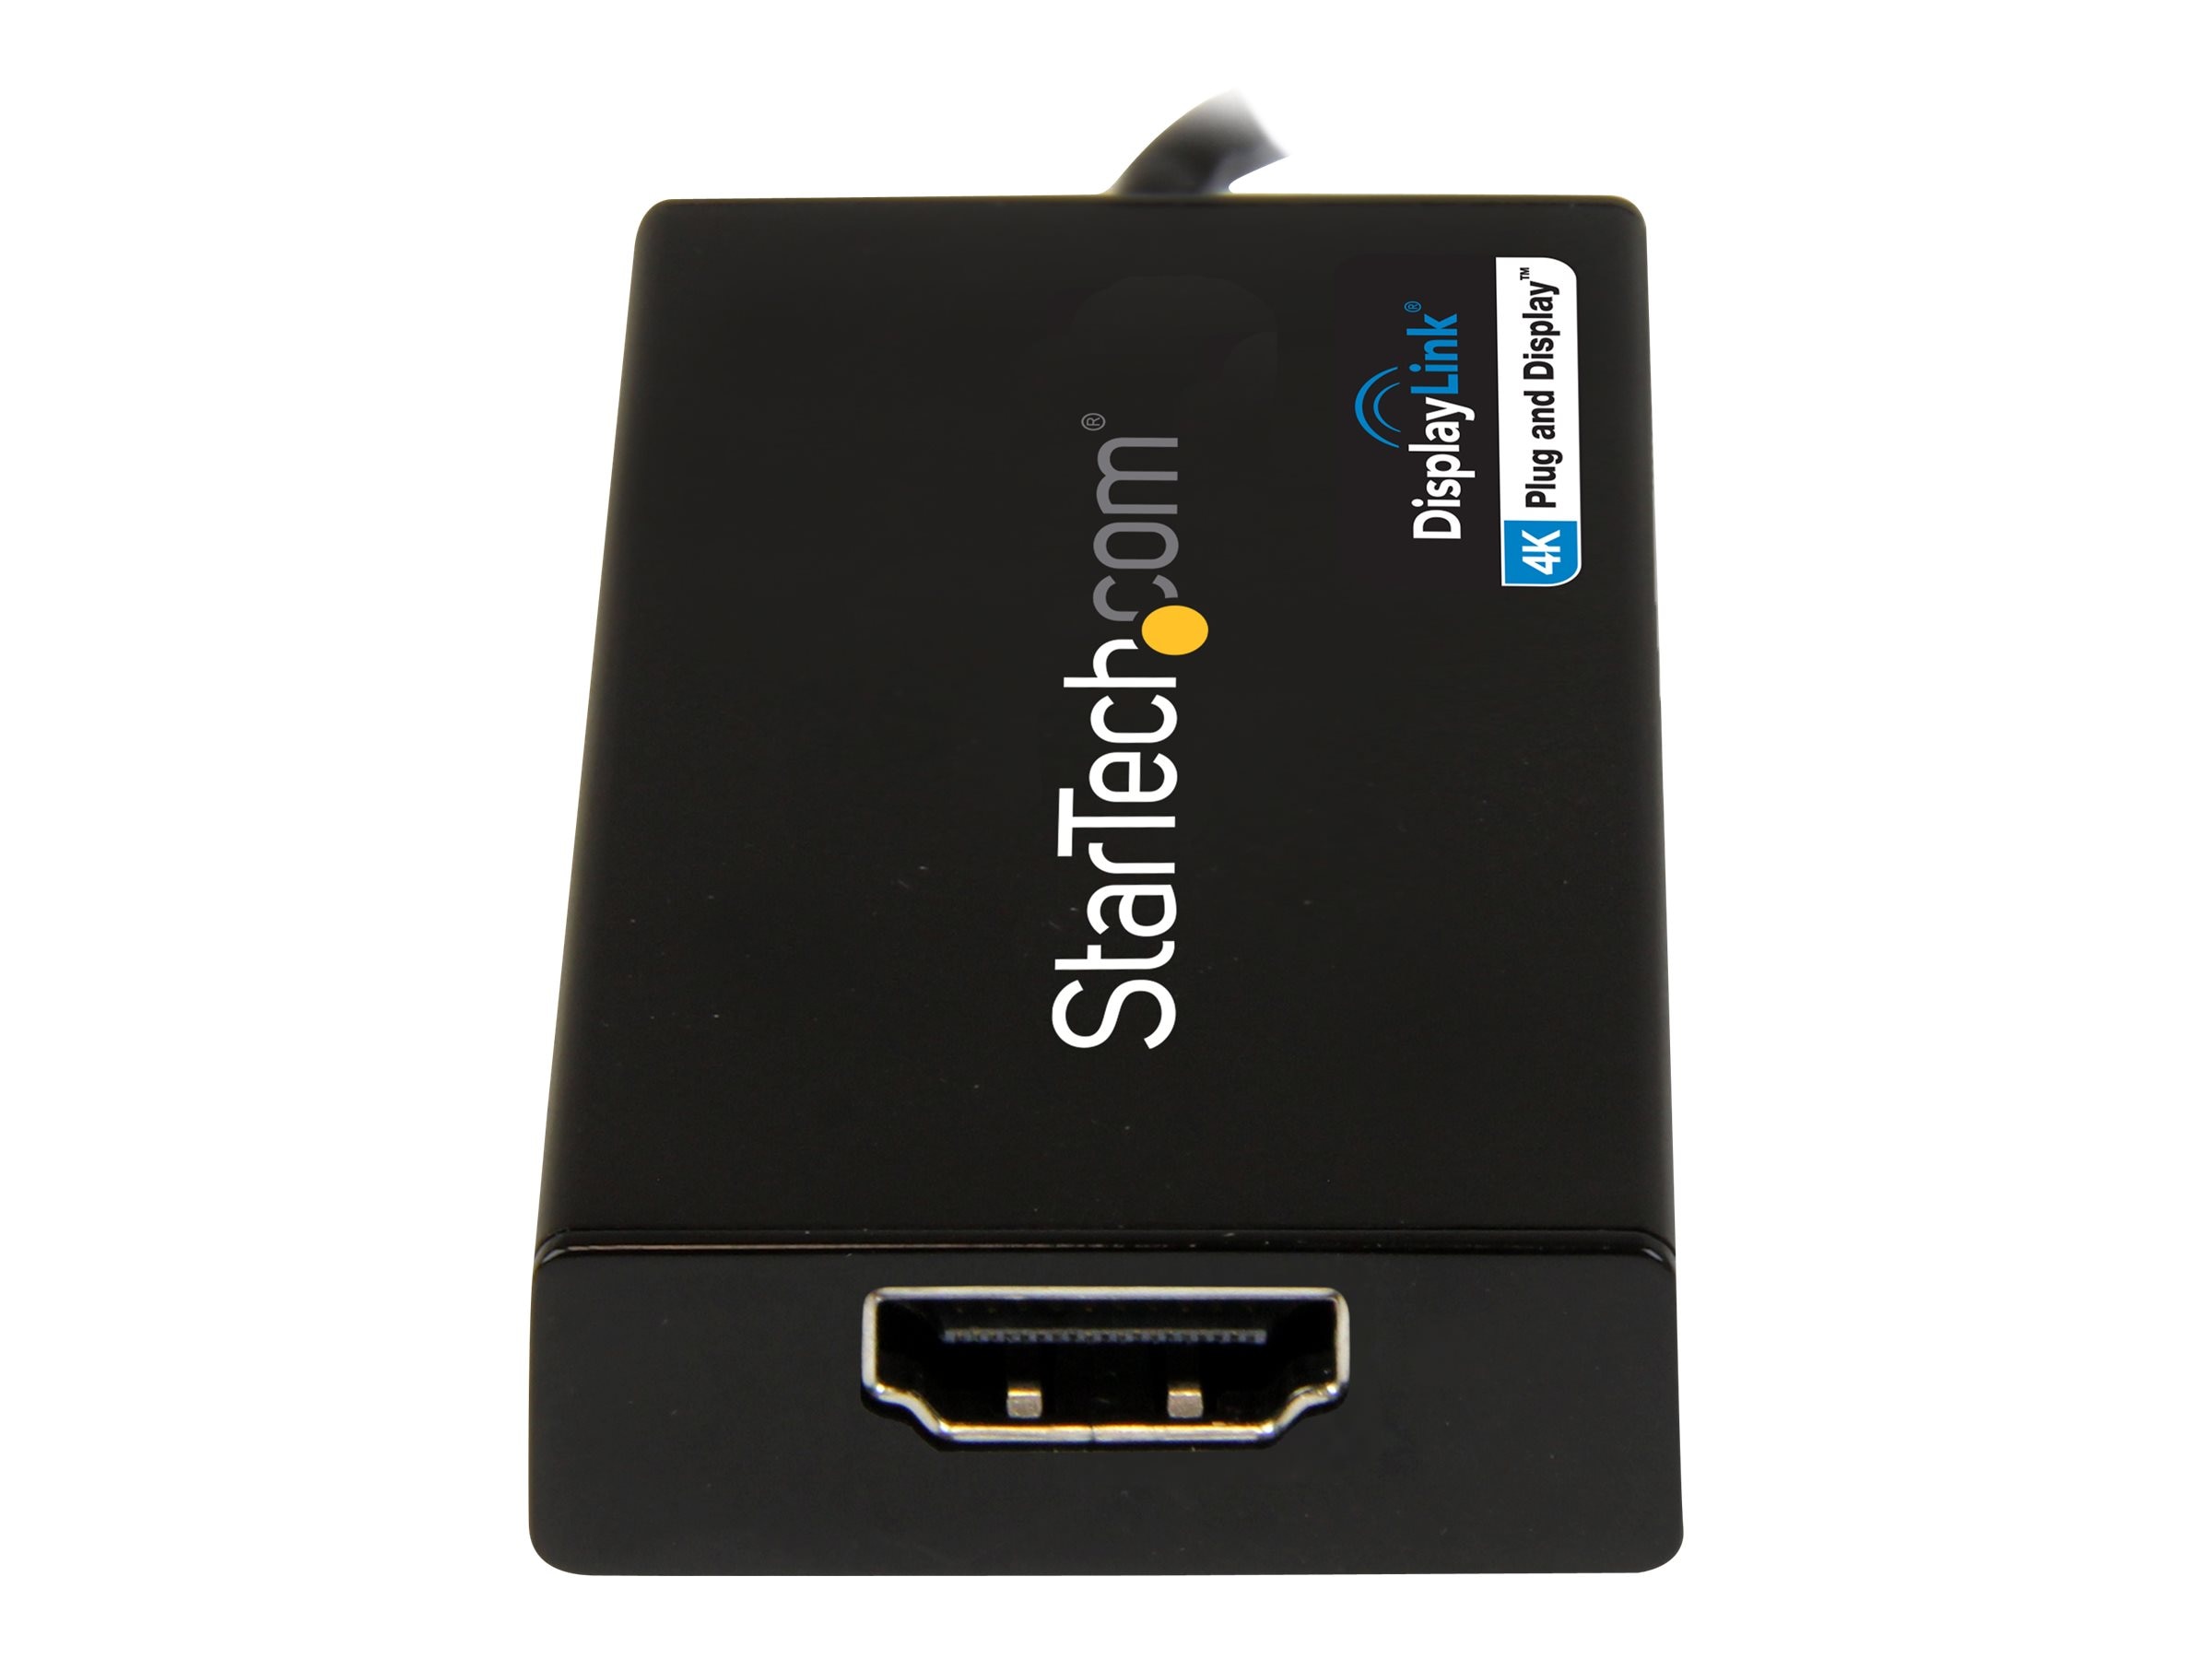 StarTech.com USB 3.0 to HDMI Adapter - 4K - External Video Graphics Card